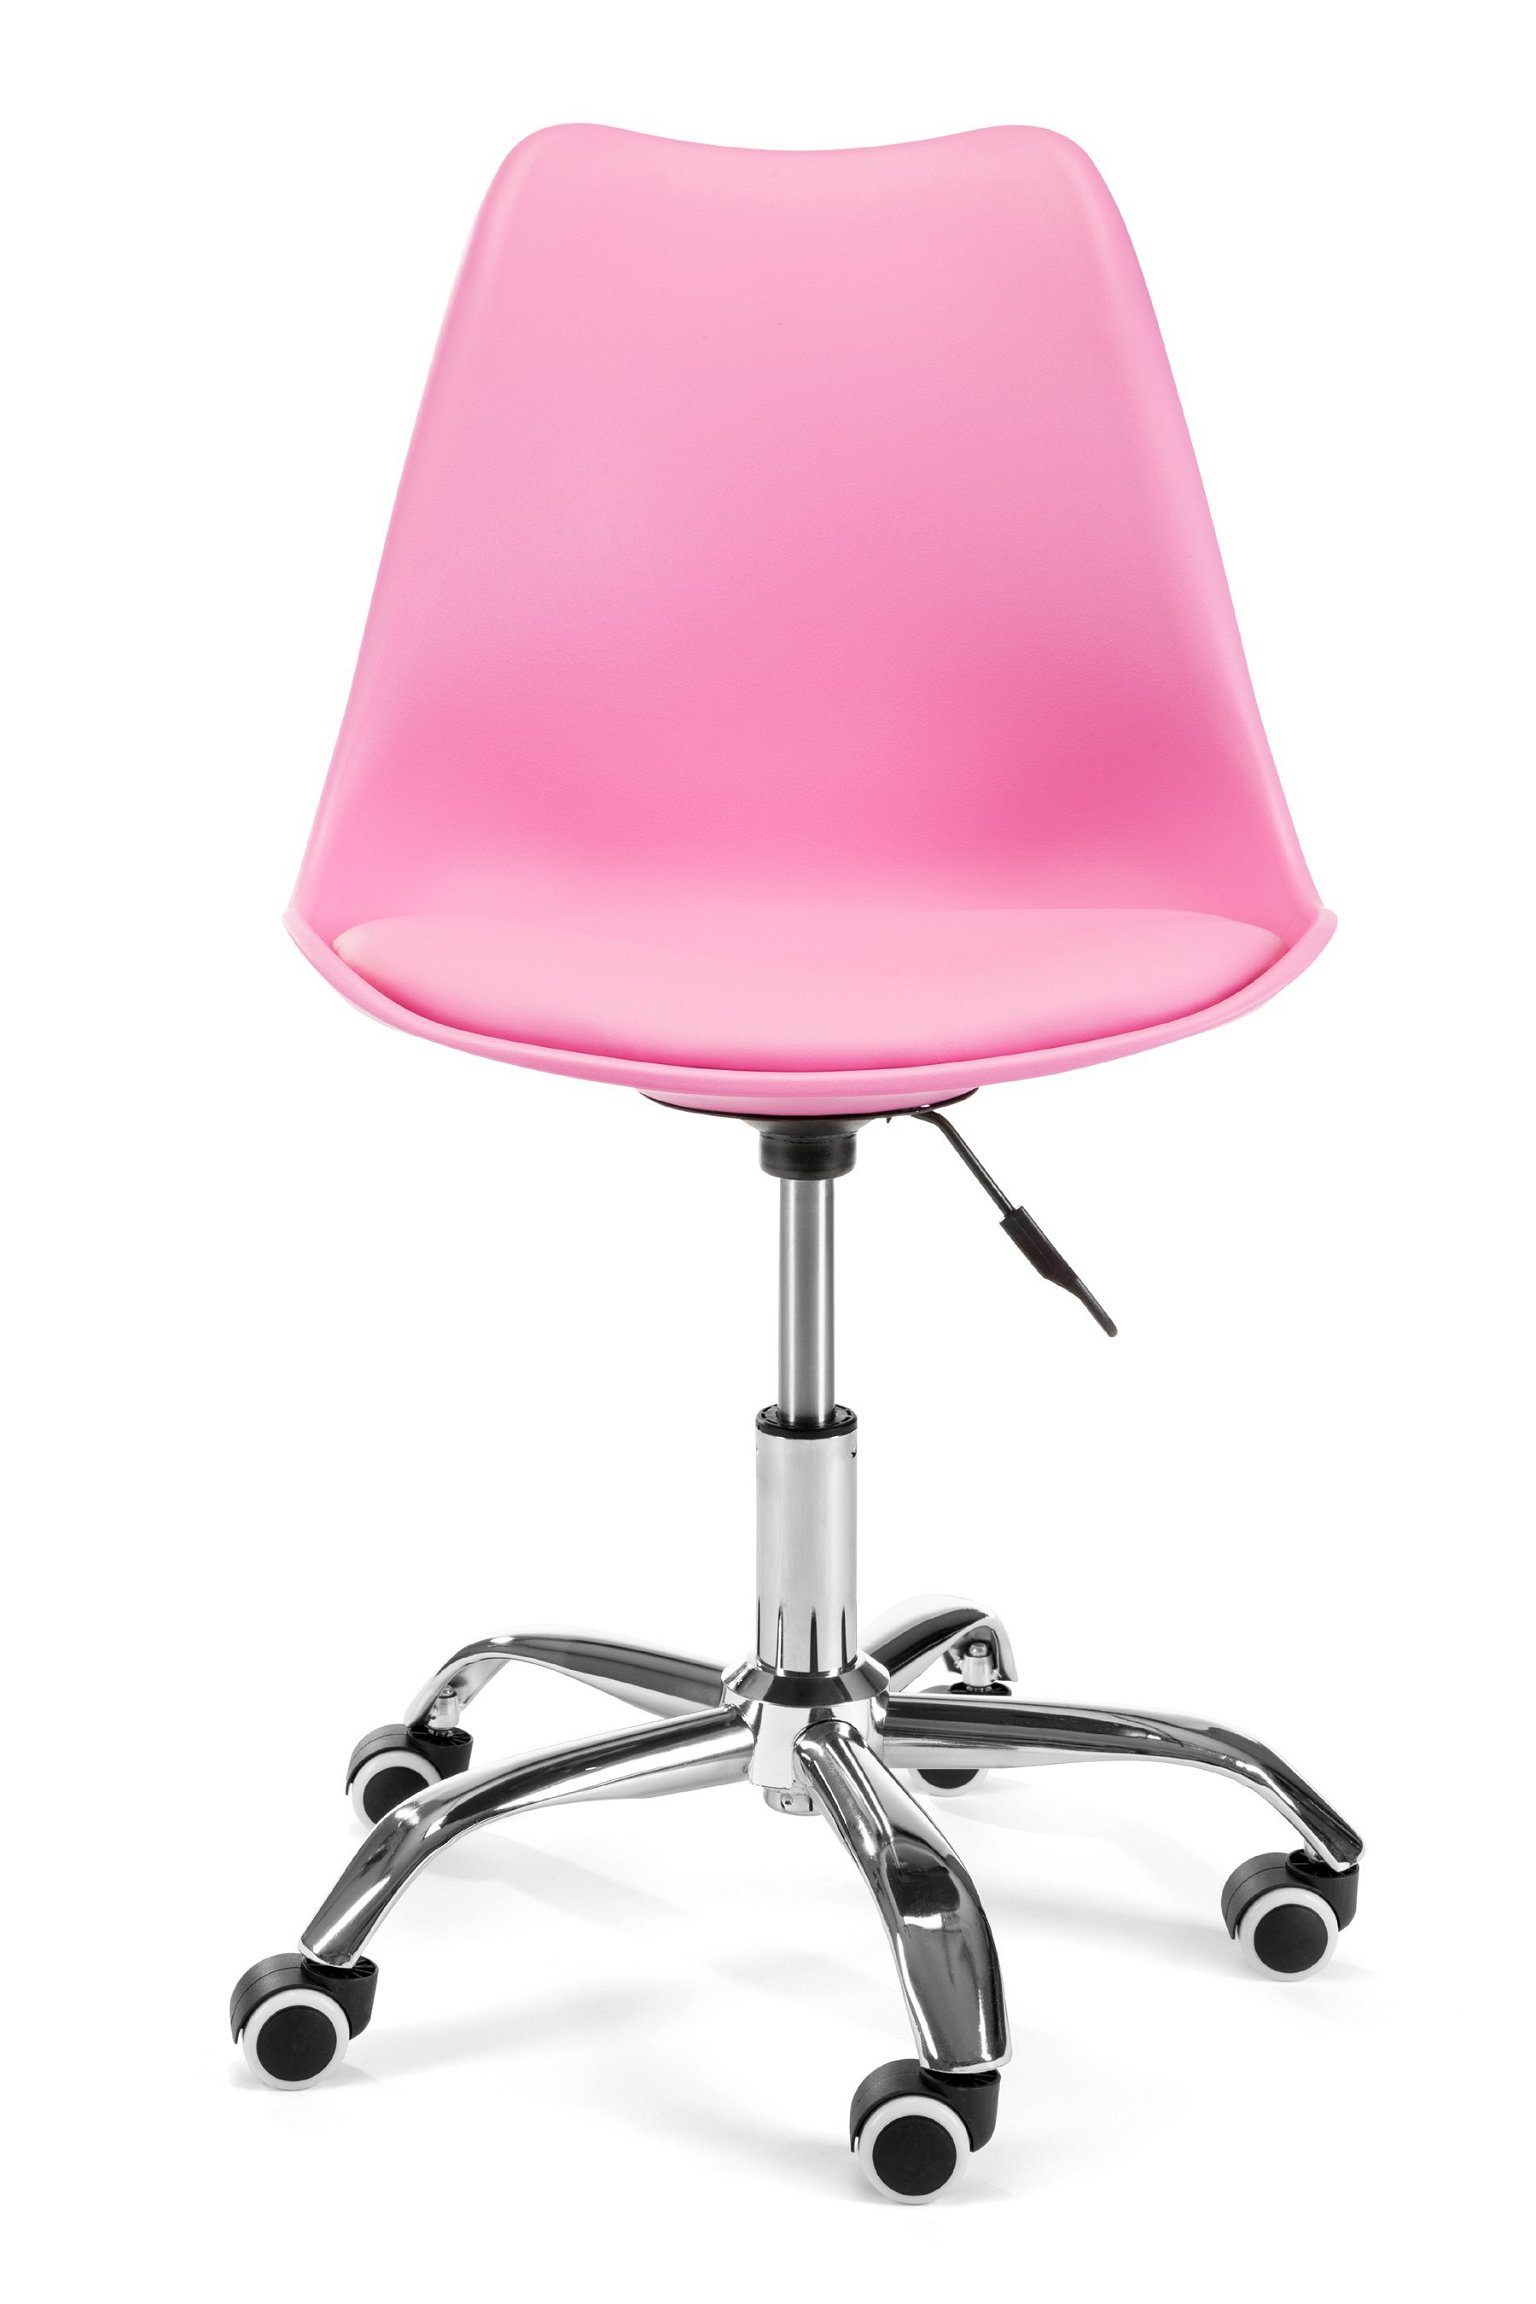 Vaikiška kėdė FD005, rožinė - 3